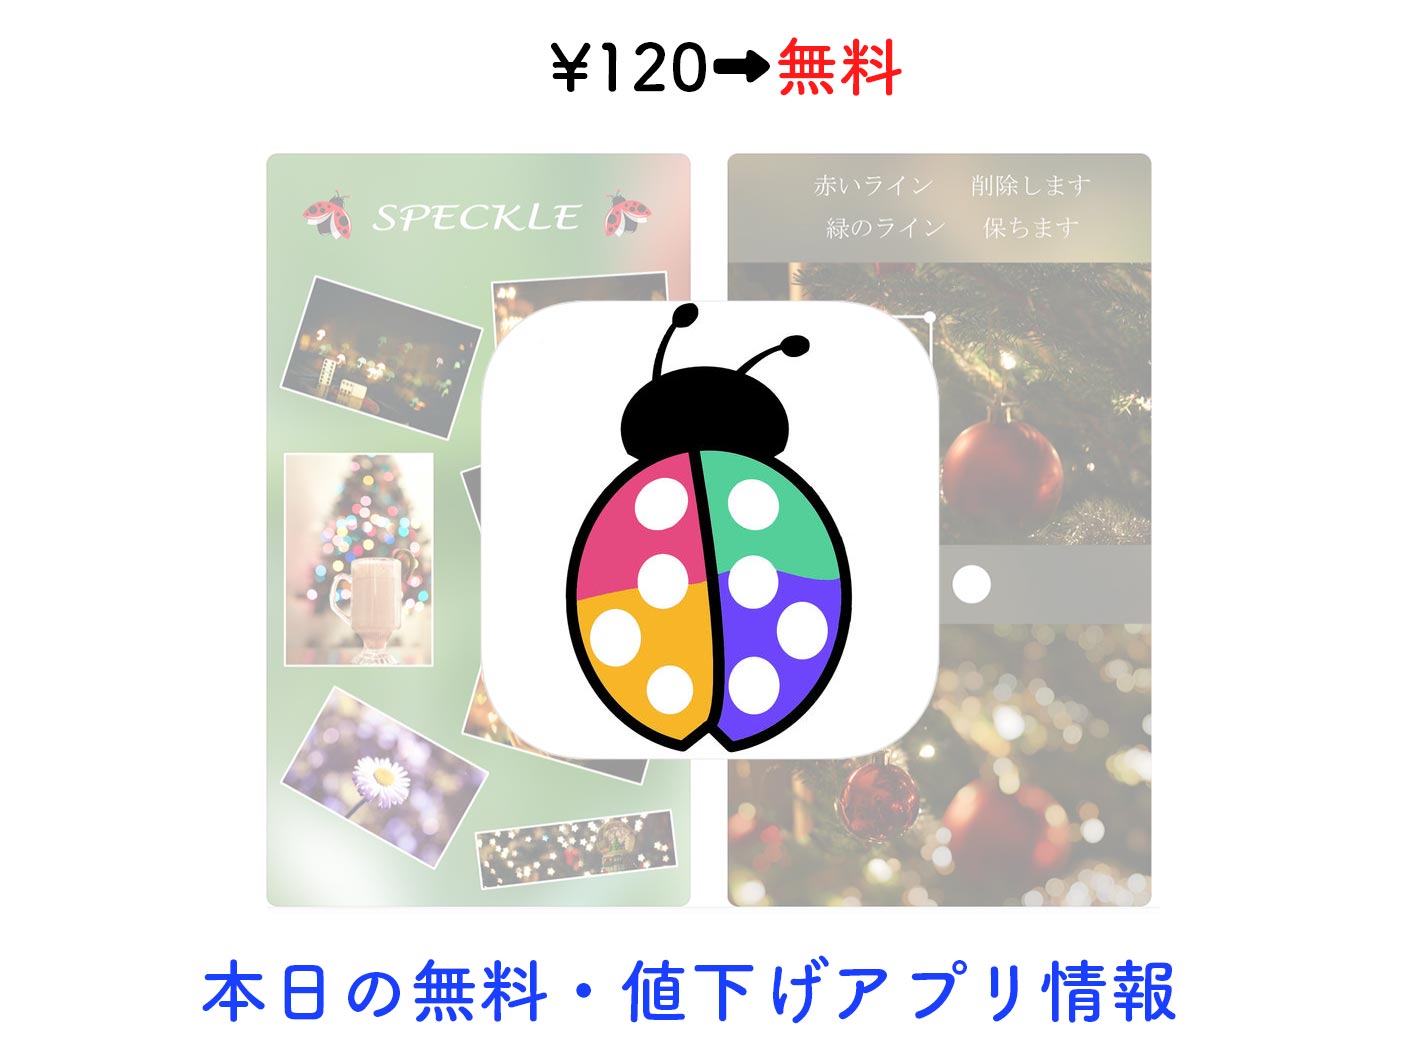 120円→無料、写真をボケ効果を利用した幻想的なものに加工できる「Speckle」など【8/6】セールアプリ情報